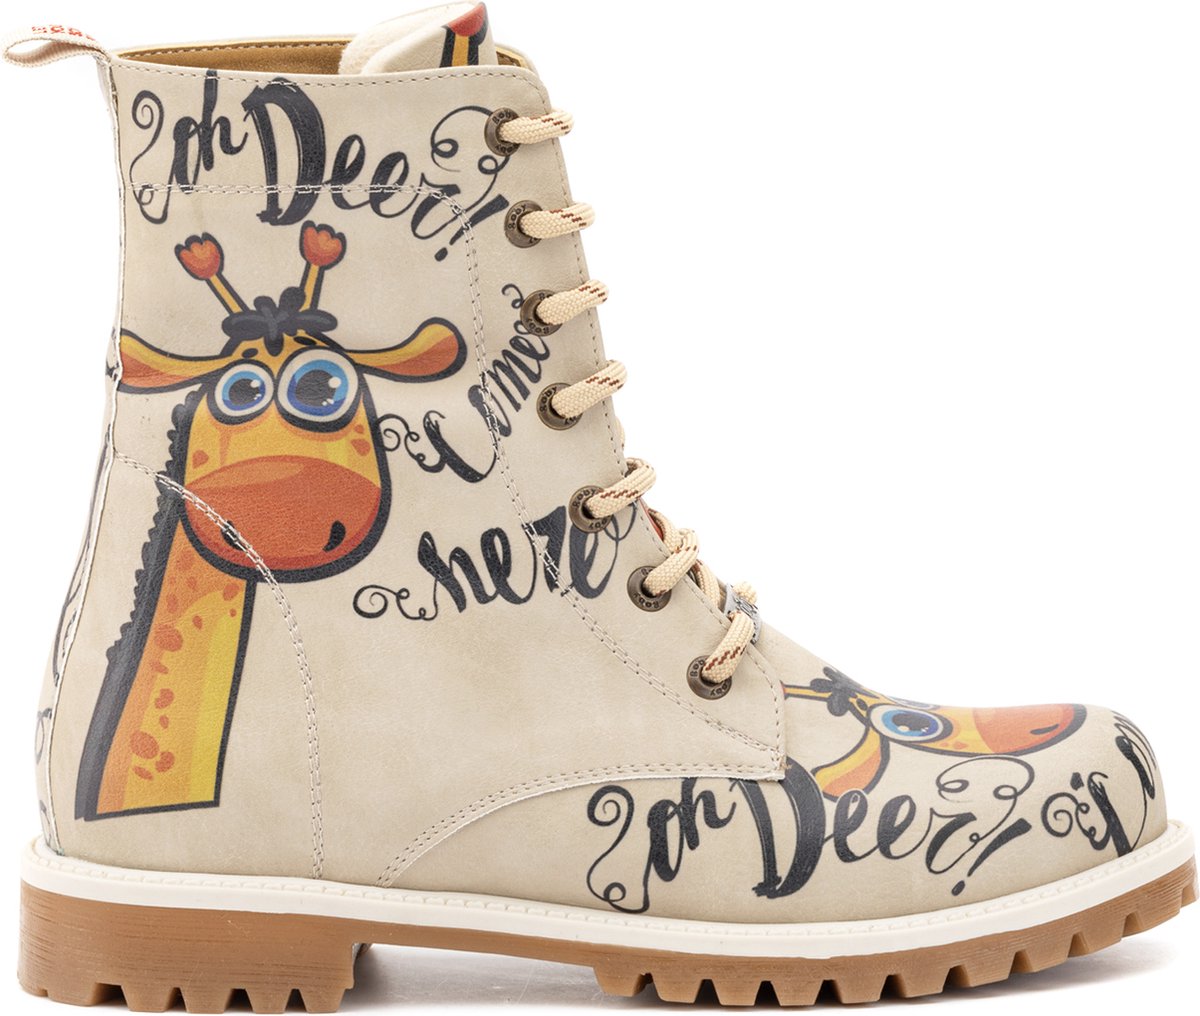 GOBY - Ooo My deer - Boots - Laars - Laarzen - Damesboots - Dames laarzen - Longboots - Handmade - Maat 37